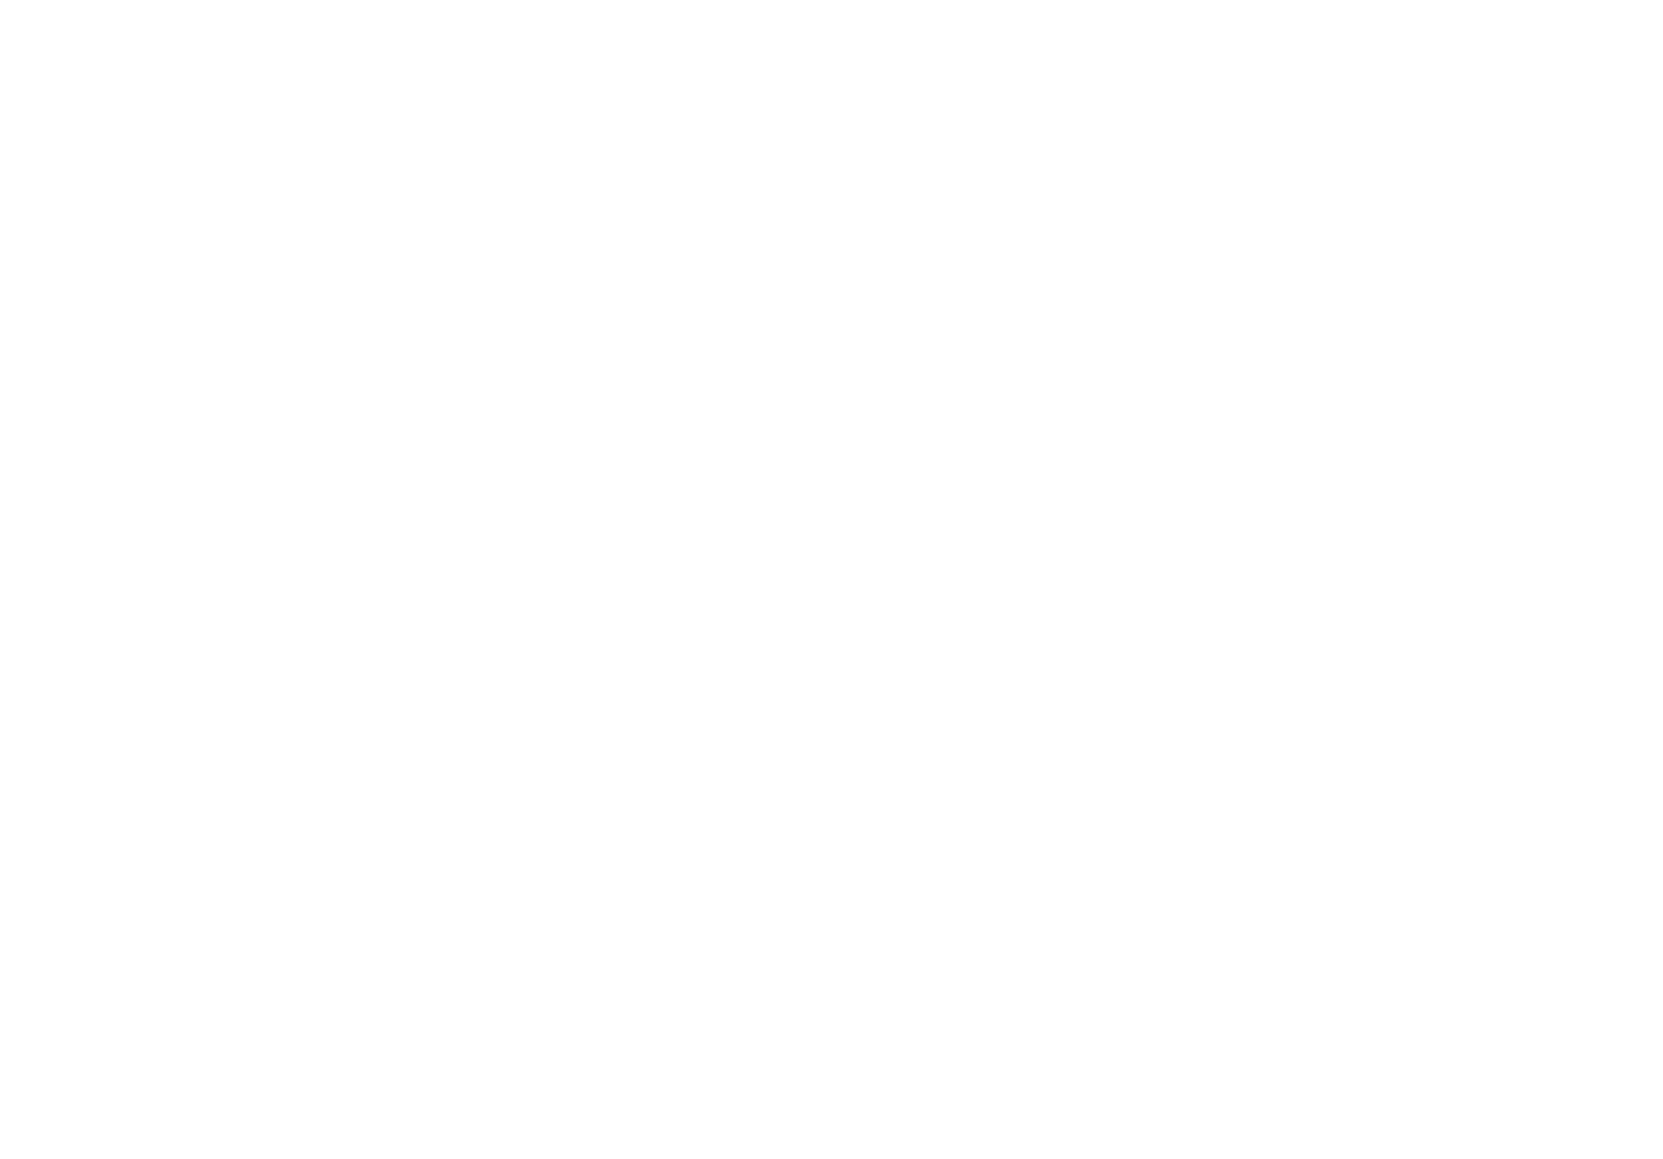 OAK restaurante logotipo